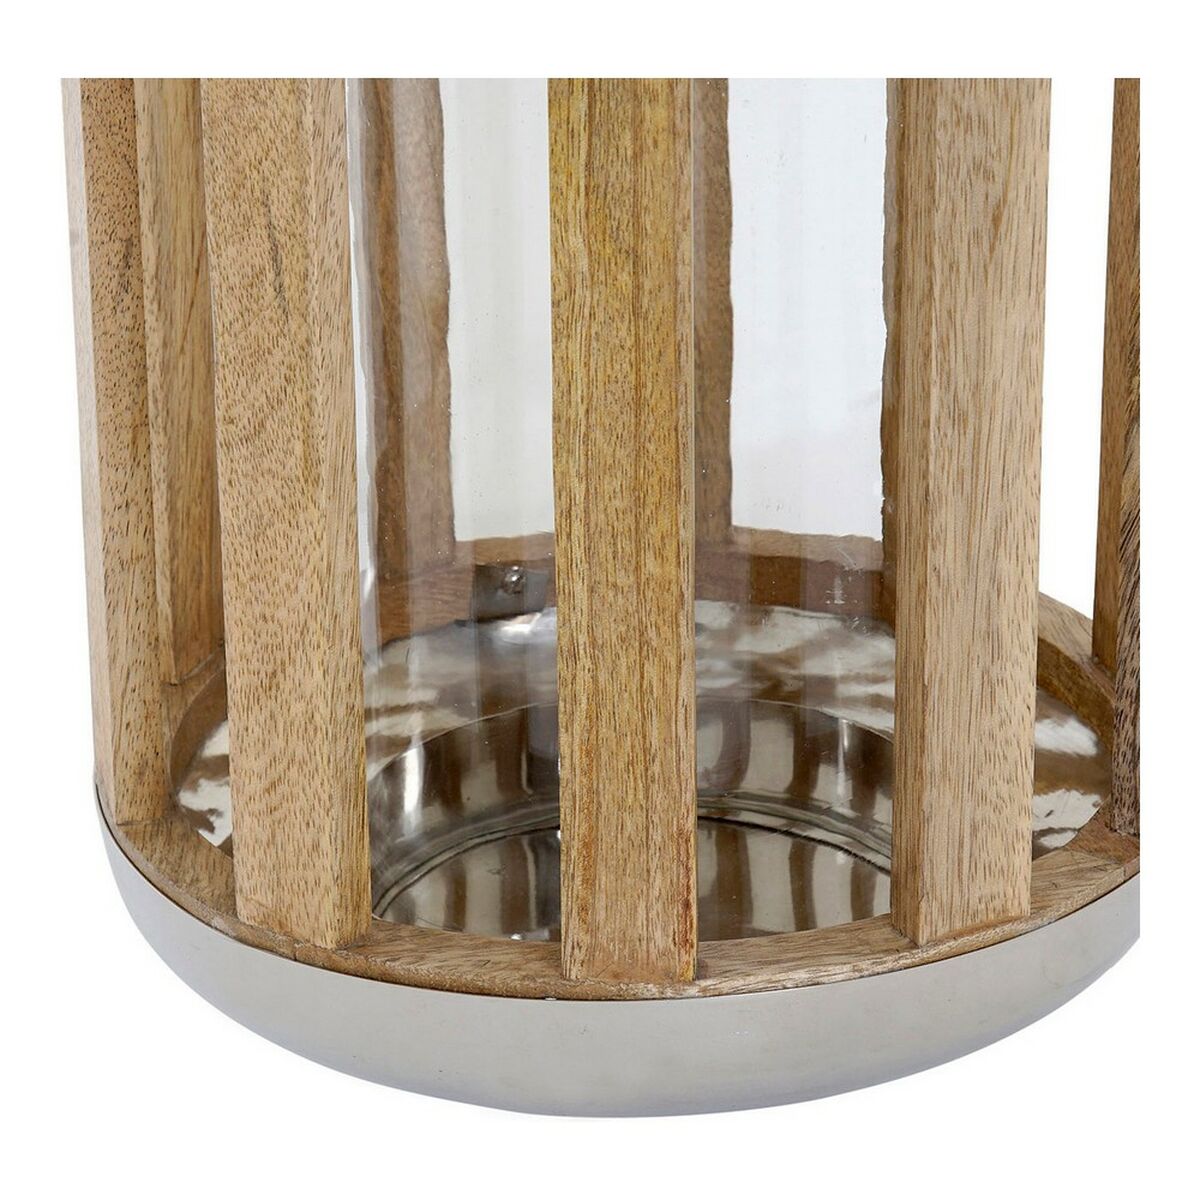 Lantern DKD Home Decor Silver Wood Metal (22 x 22 x 32 cm)